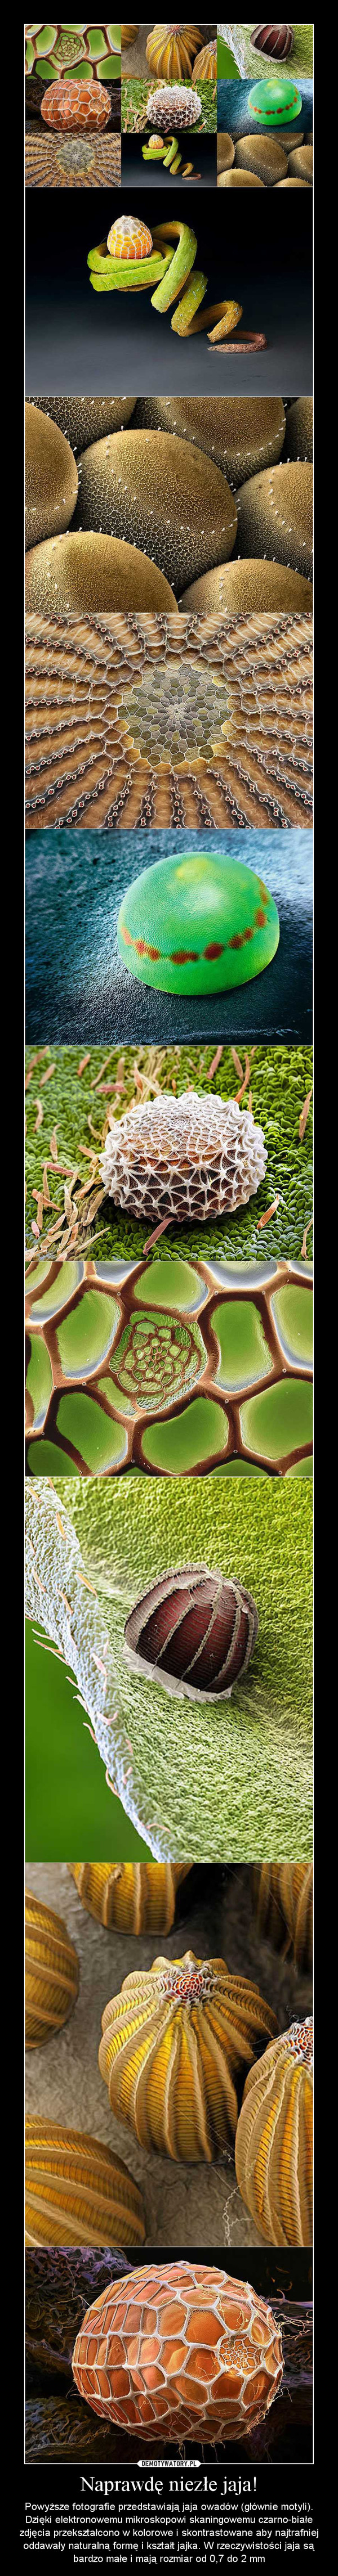 Naprawdę niezłe jaja! – Powyższe fotografie przedstawiają jaja owadów (głównie motyli). Dzięki elektronowemu mikroskopowi skaningowemu czarno-białe zdjęcia przekształcono w kolorowe i skontrastowane aby najtrafniej oddawały naturalną formę i kształt jajka. W rzeczywistości jaja są bardzo małe i mają rozmiar od 0,7 do 2 mm 